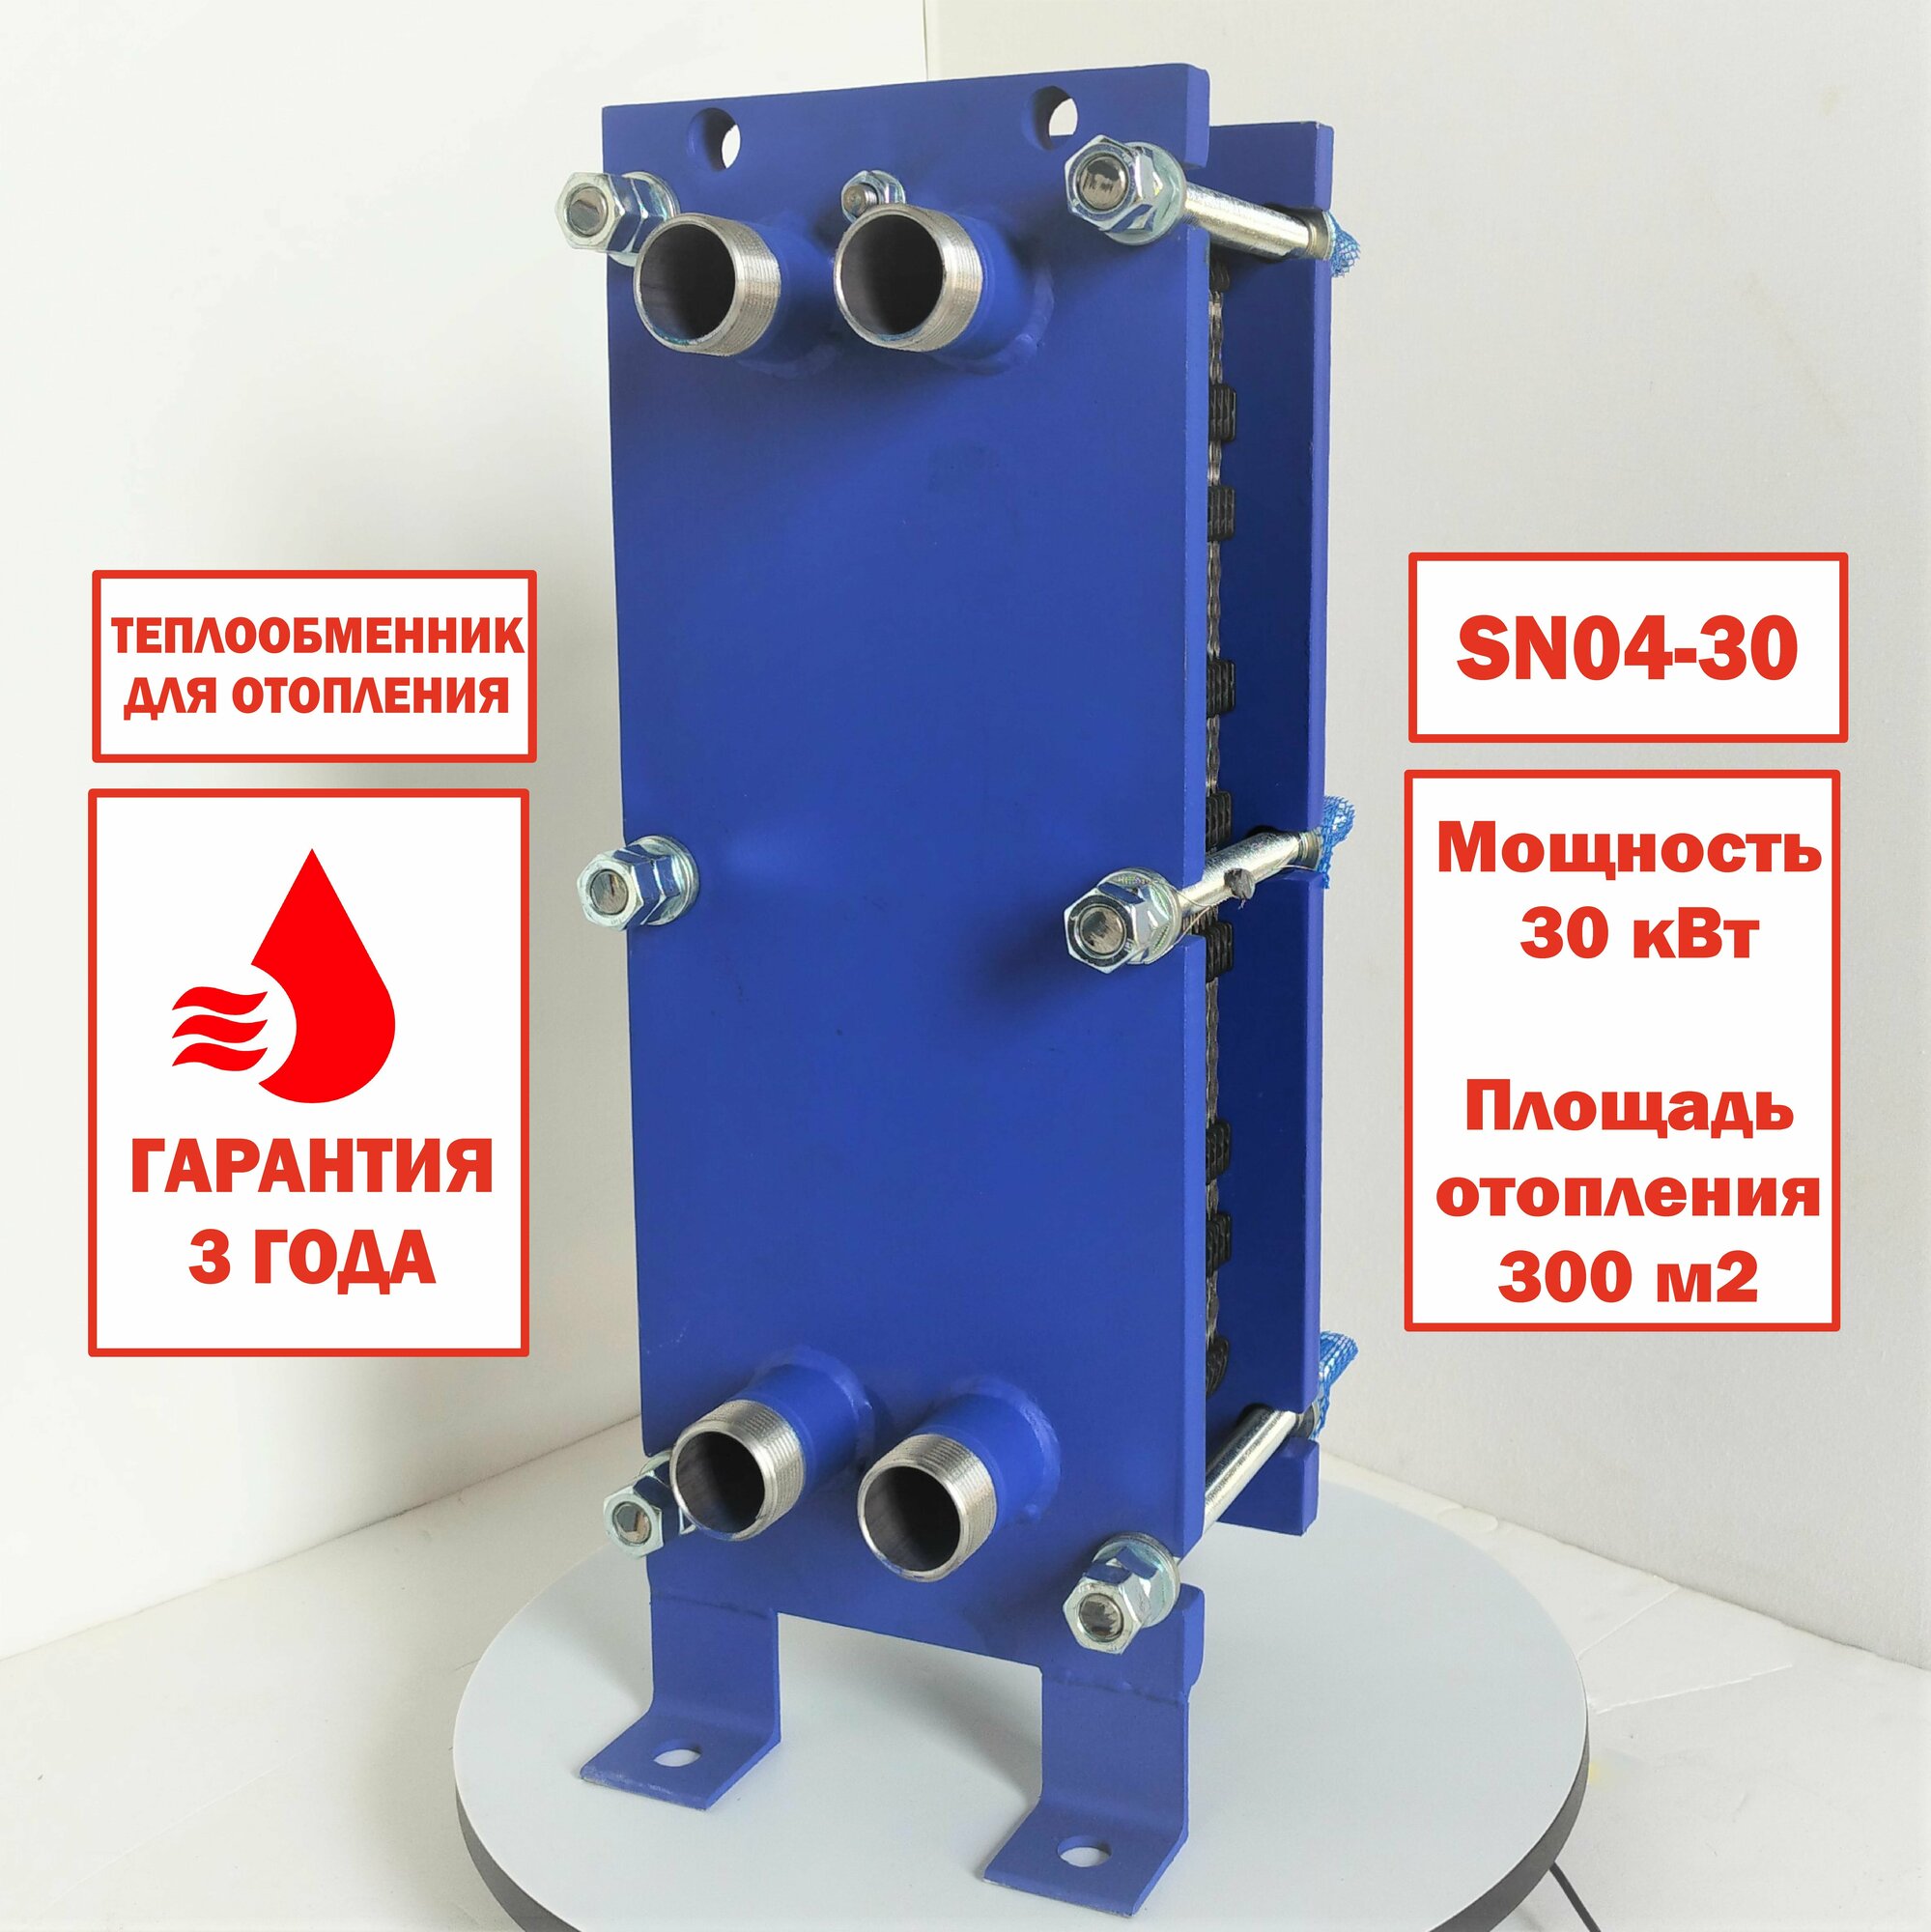 Пластинчатый разборный теплообменник SN04-30 для отопления площади 300 м2. Мощность 30 кВт